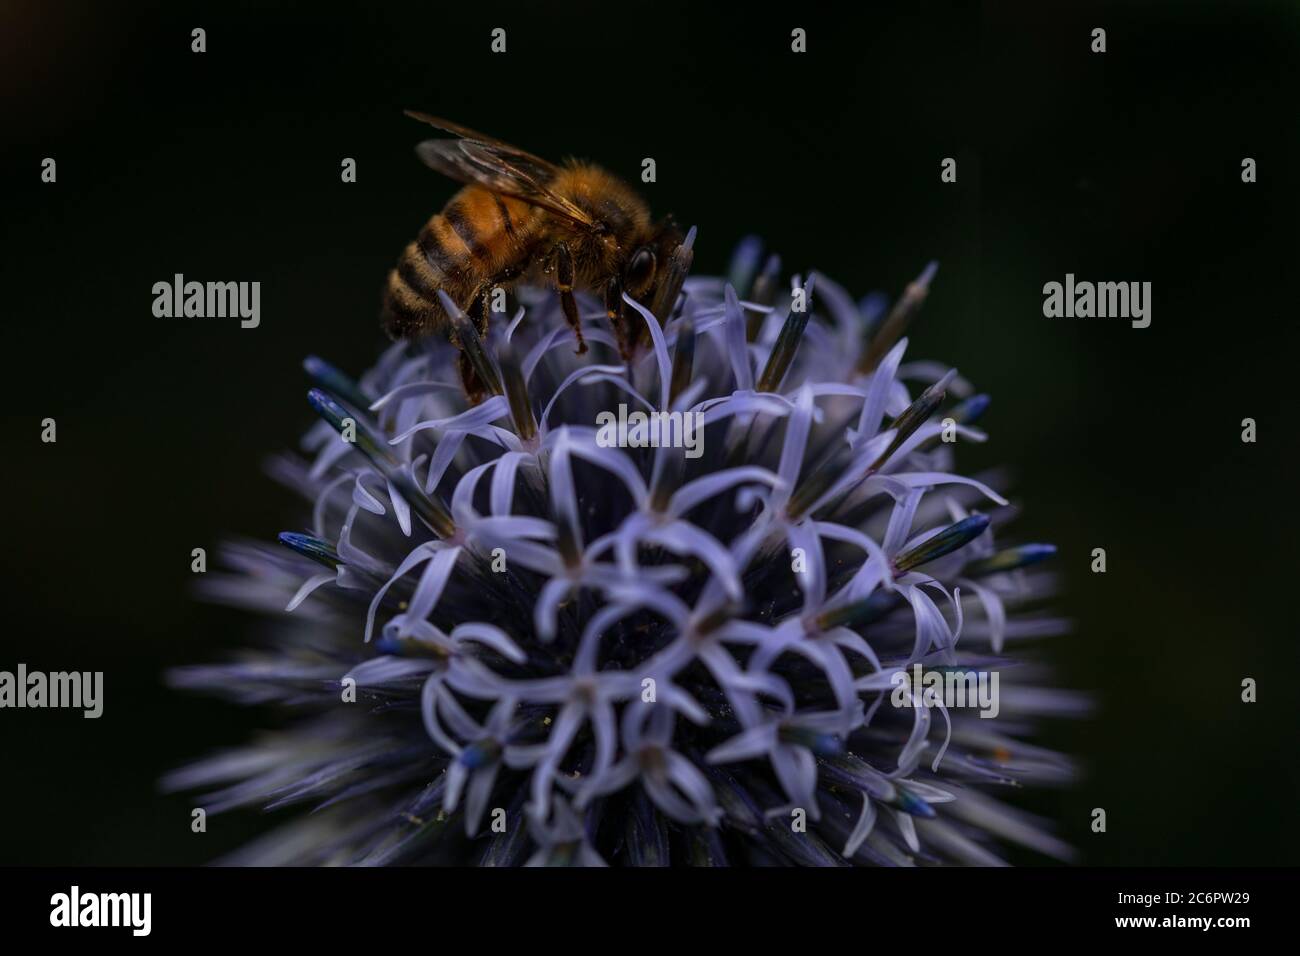 Occupé comme abeille. Macro d'une abeille sur un globe bleu Thistle. Arrière-plan bokeh sombre contrastant avec les sujets éclairés. Banque D'Images